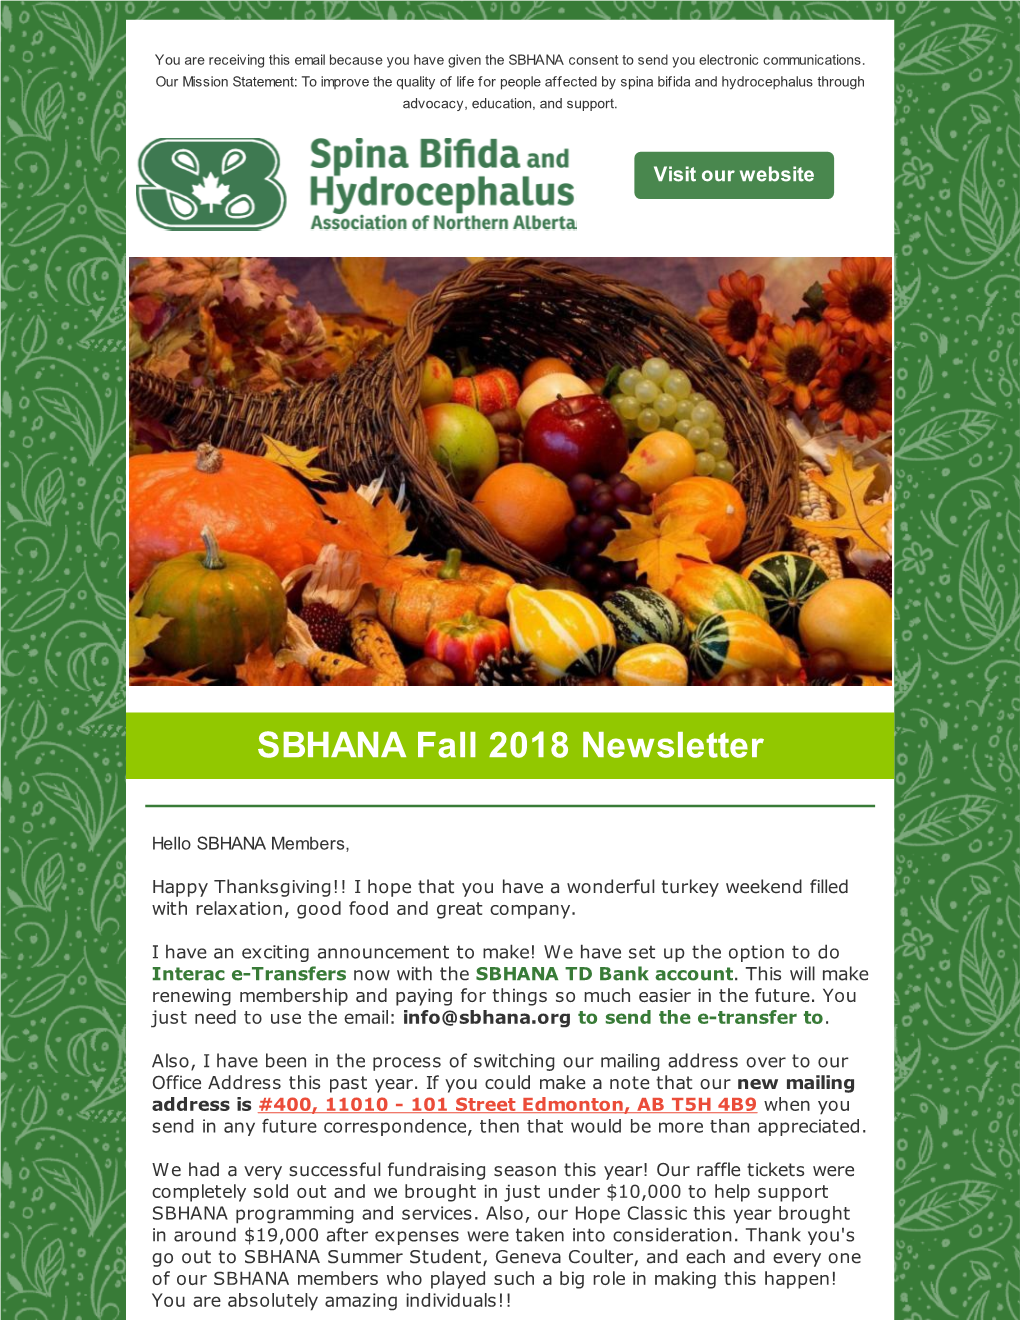 Fall 2018 Newsletter